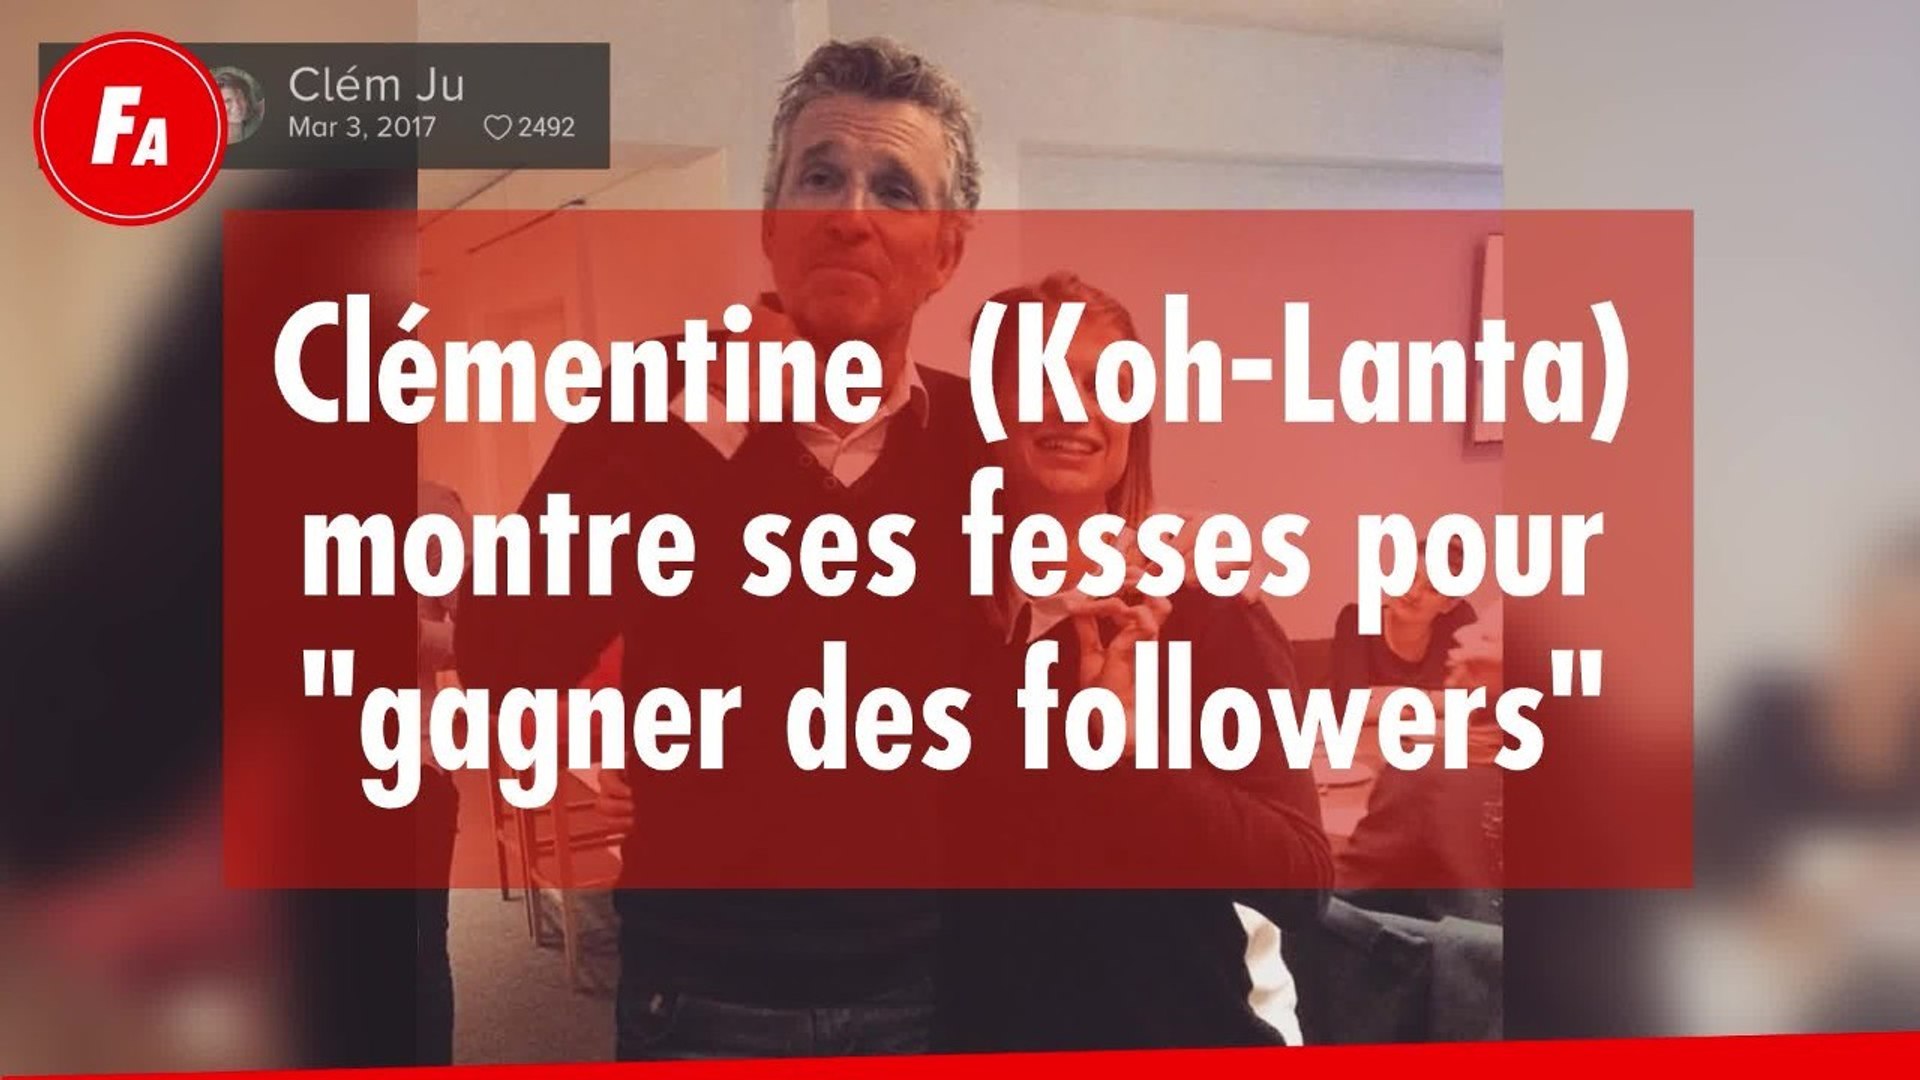 FEMME ACTUELLE - Clémentine de Koh-Lanta sans culotte : elle montre ses  fesses pour "gagner des followers" sur instagram - Vidéo Dailymotion